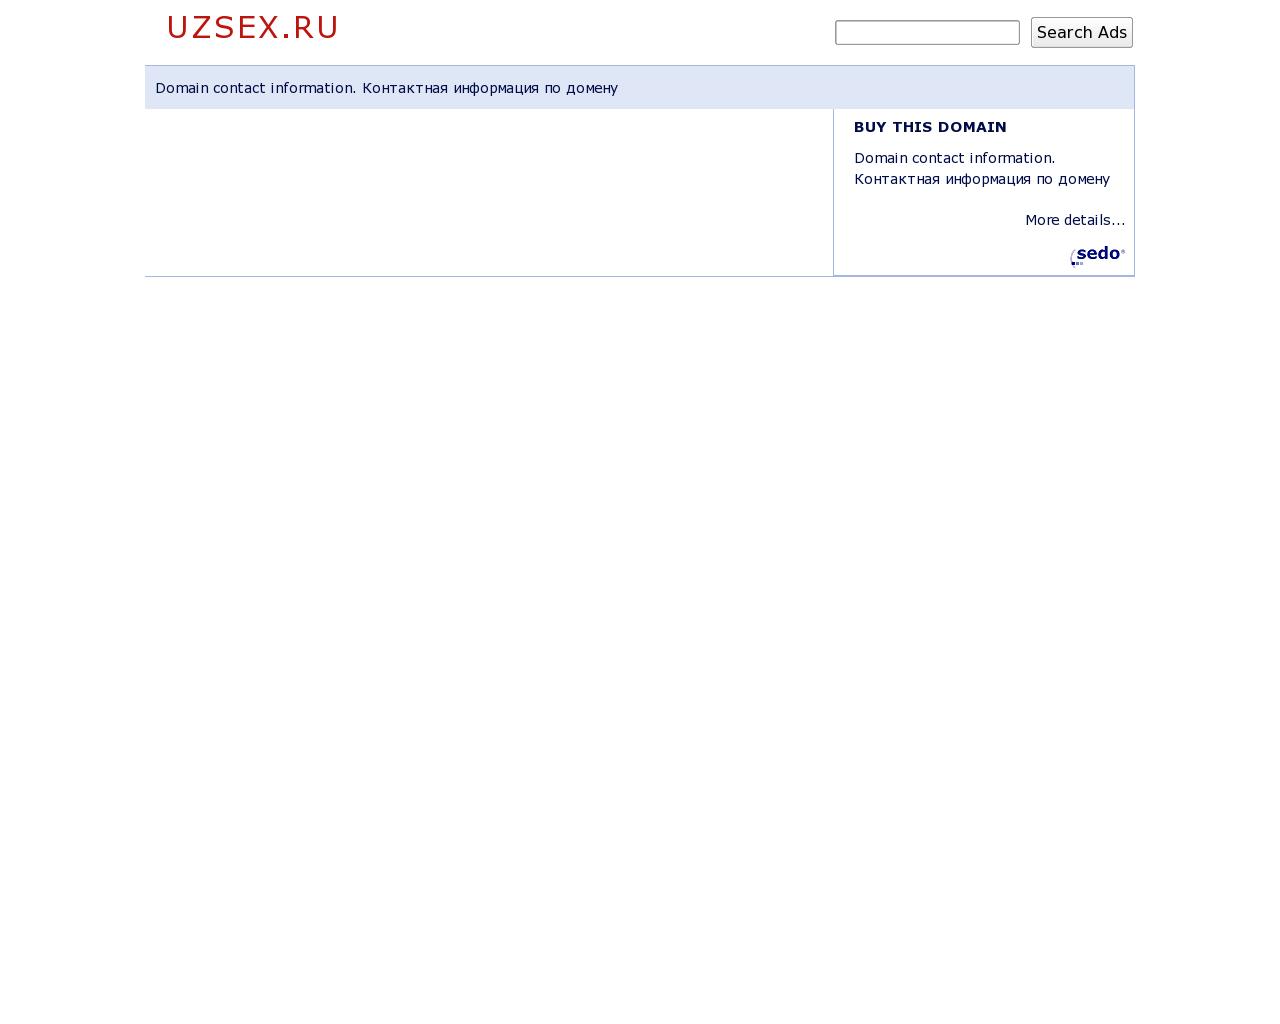 Изображение сайта uzsex.ru в разрешении 1280x1024